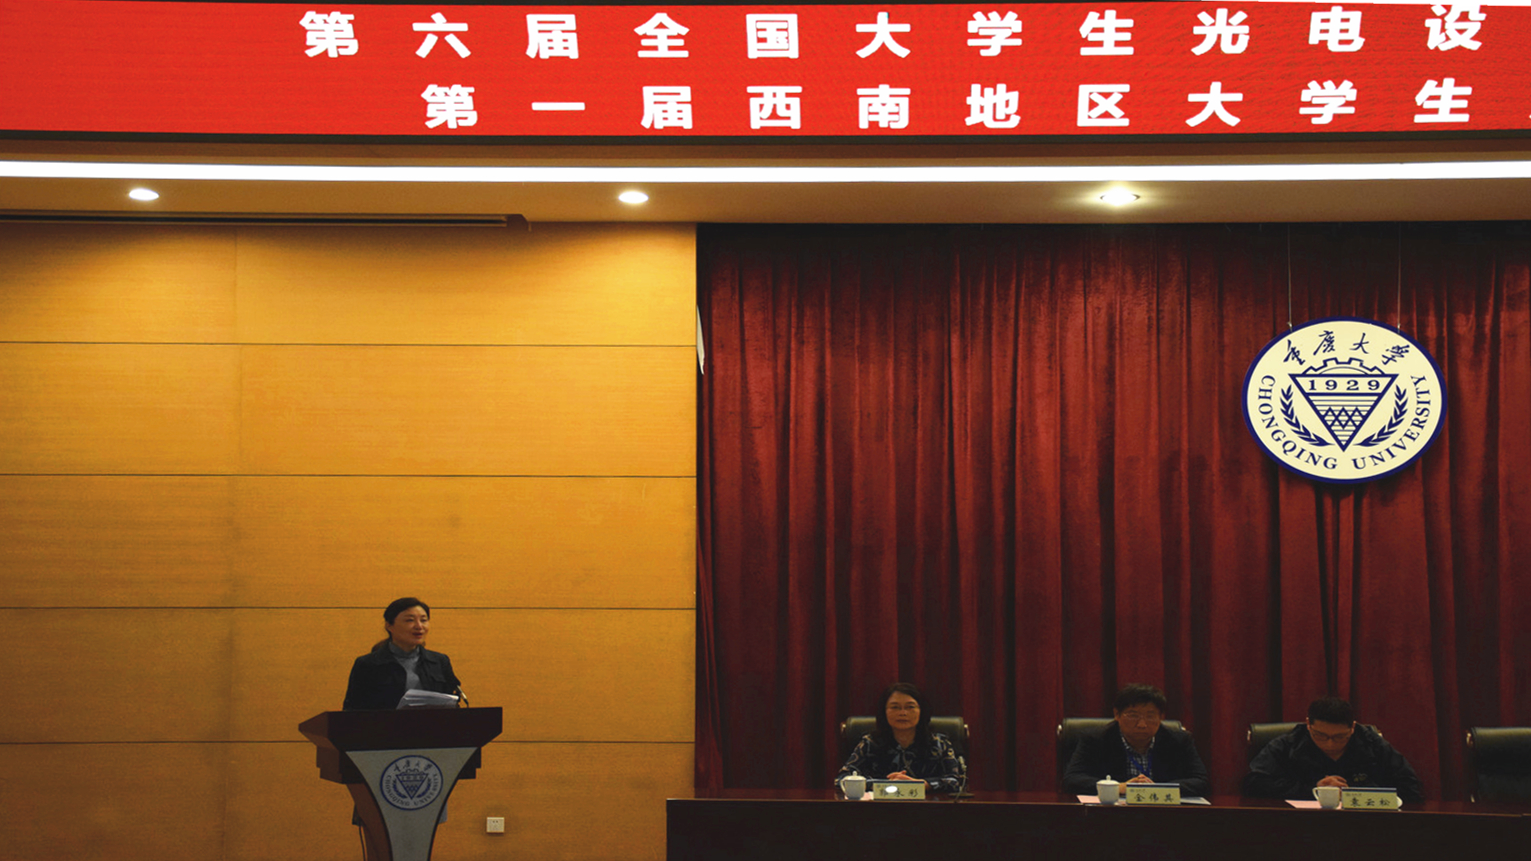 重庆大学举办第一届西南地区大学生光电设计竞